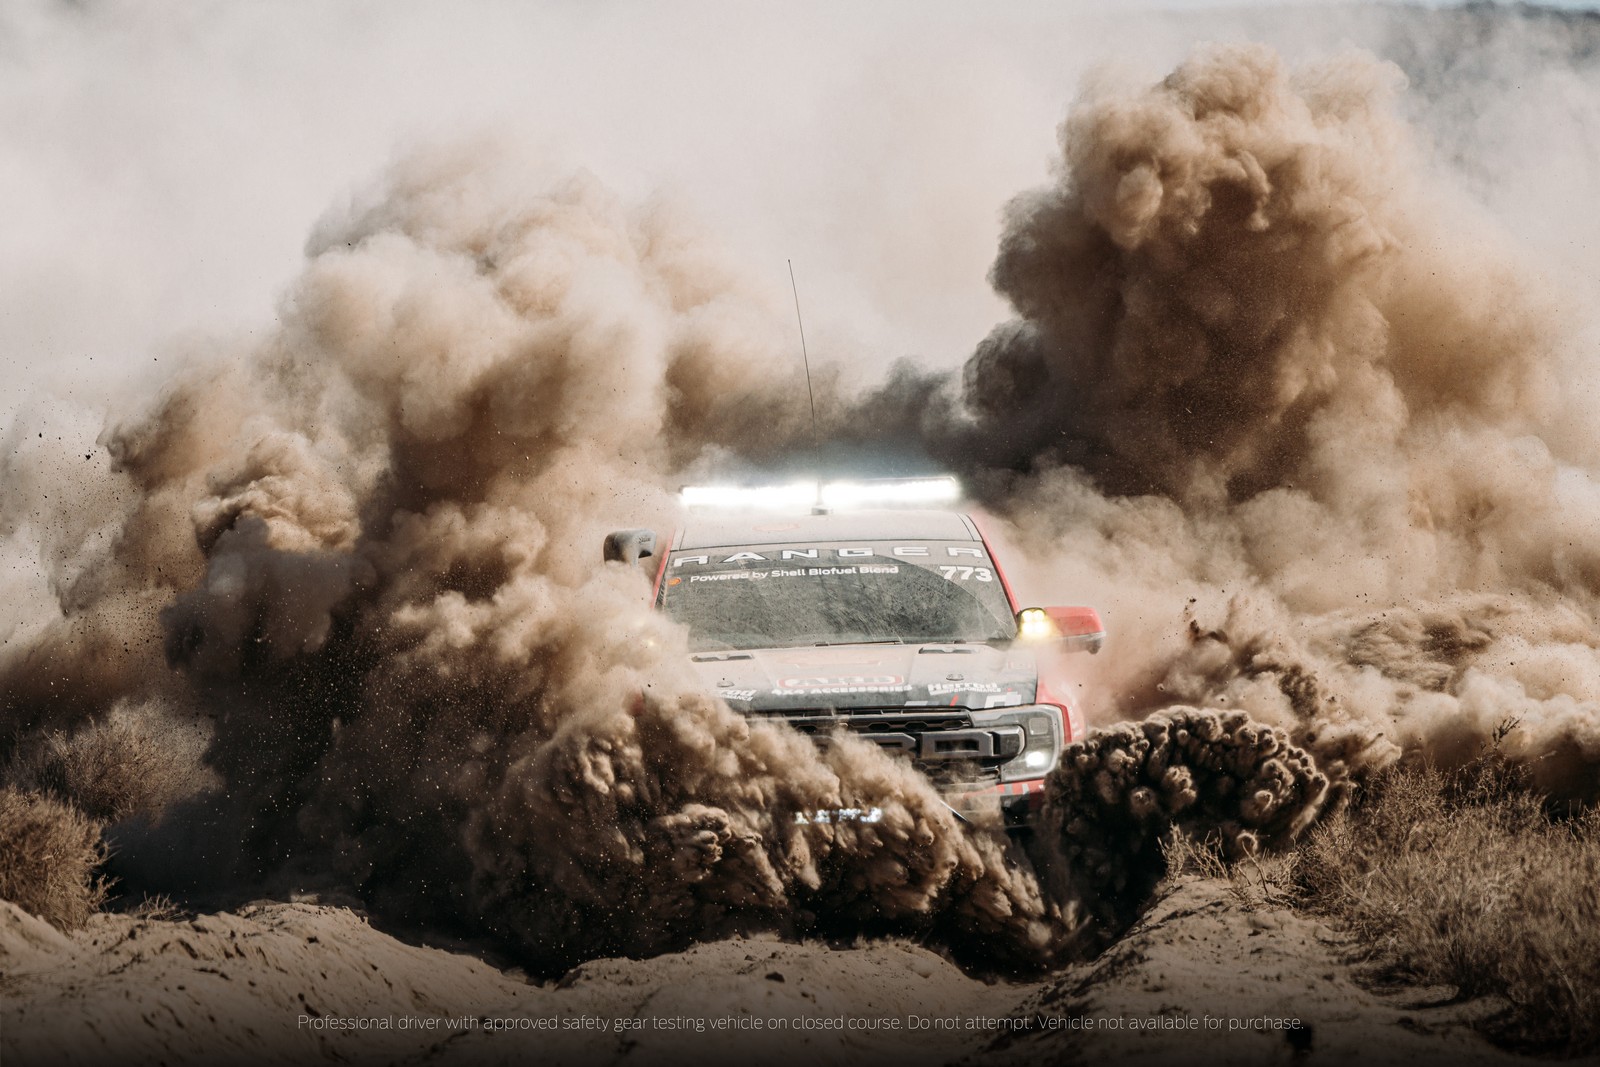 Ford Ranger Raptor thế hệ mới tham gia chinh phục giải đua địa hình khắc nghiệt nhất thế giới